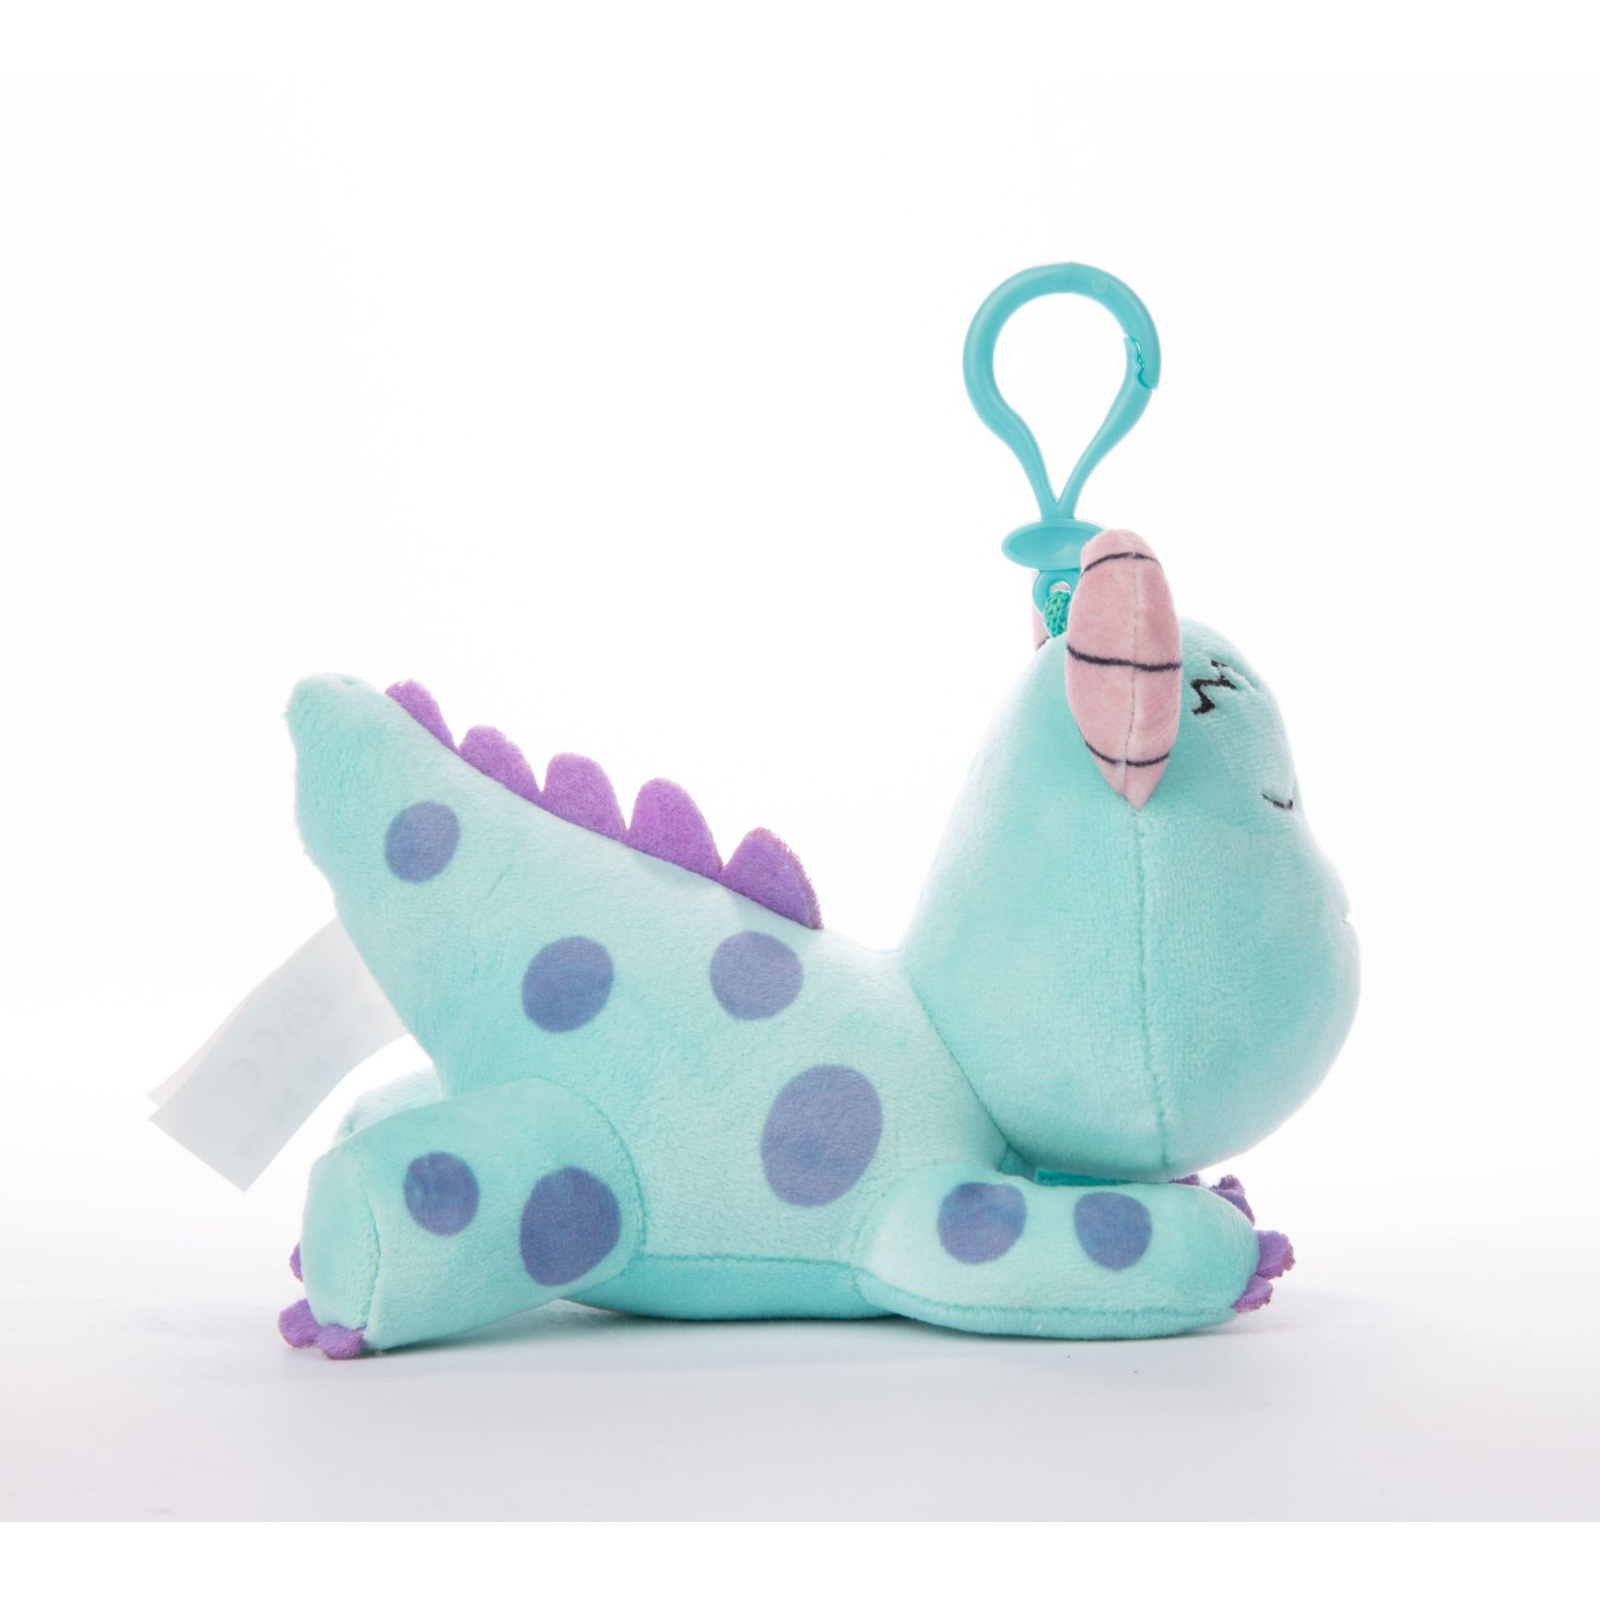 Мягкая игрушка Sambro Disney Collectible мягконабивная Snuglets монстр Салли с клипсой 13 см (DSG-9429-4) изображение 4